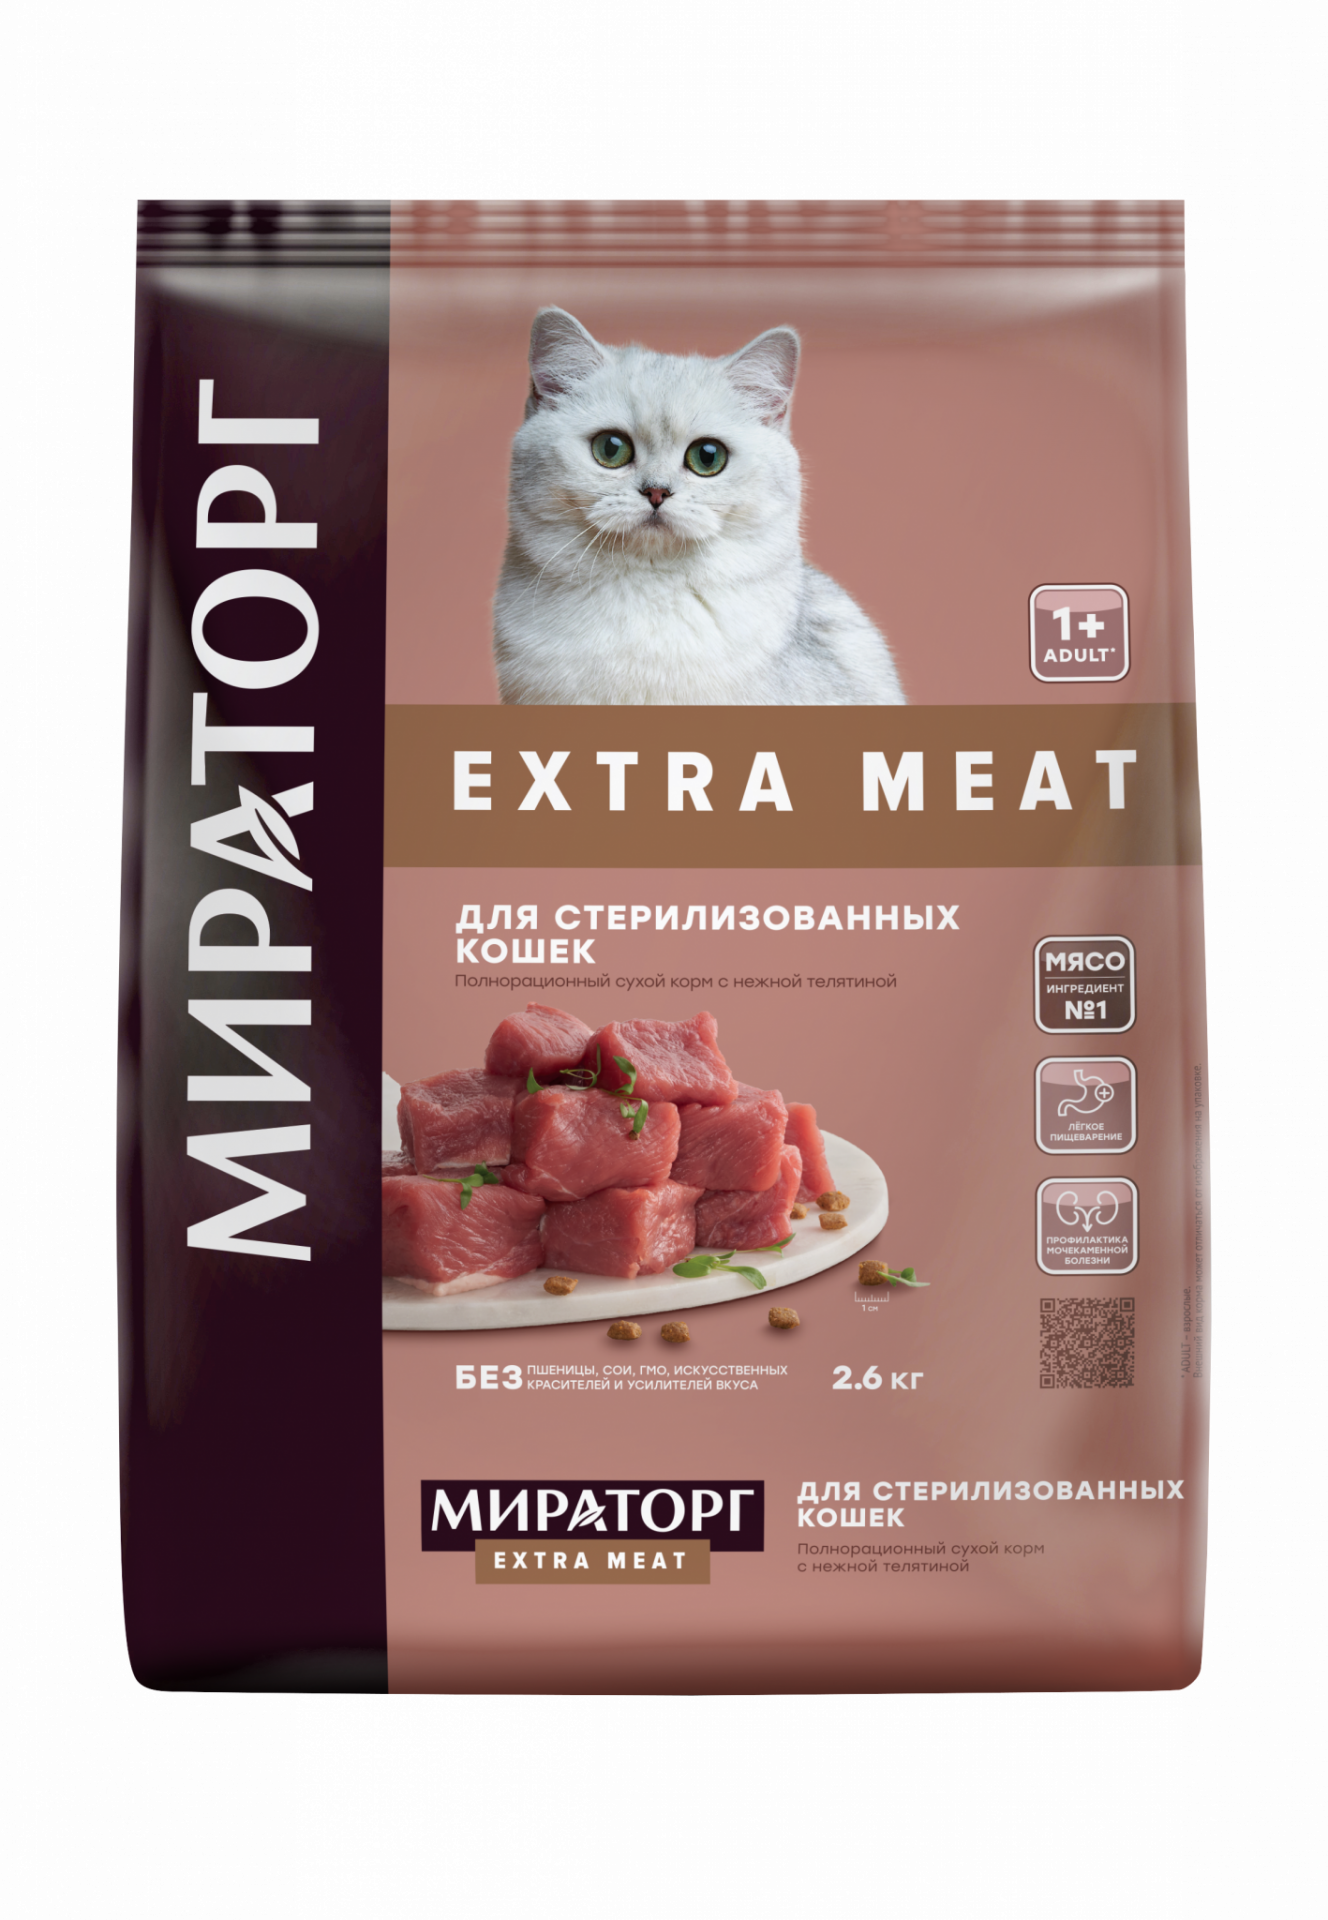 Сухой корм для кошек Мираторг Extra Meat с нежной телятиной для стерилизованных кошек 2.6 кг — купить в интернет-магазине по низкой цене на Яндекс Маркете